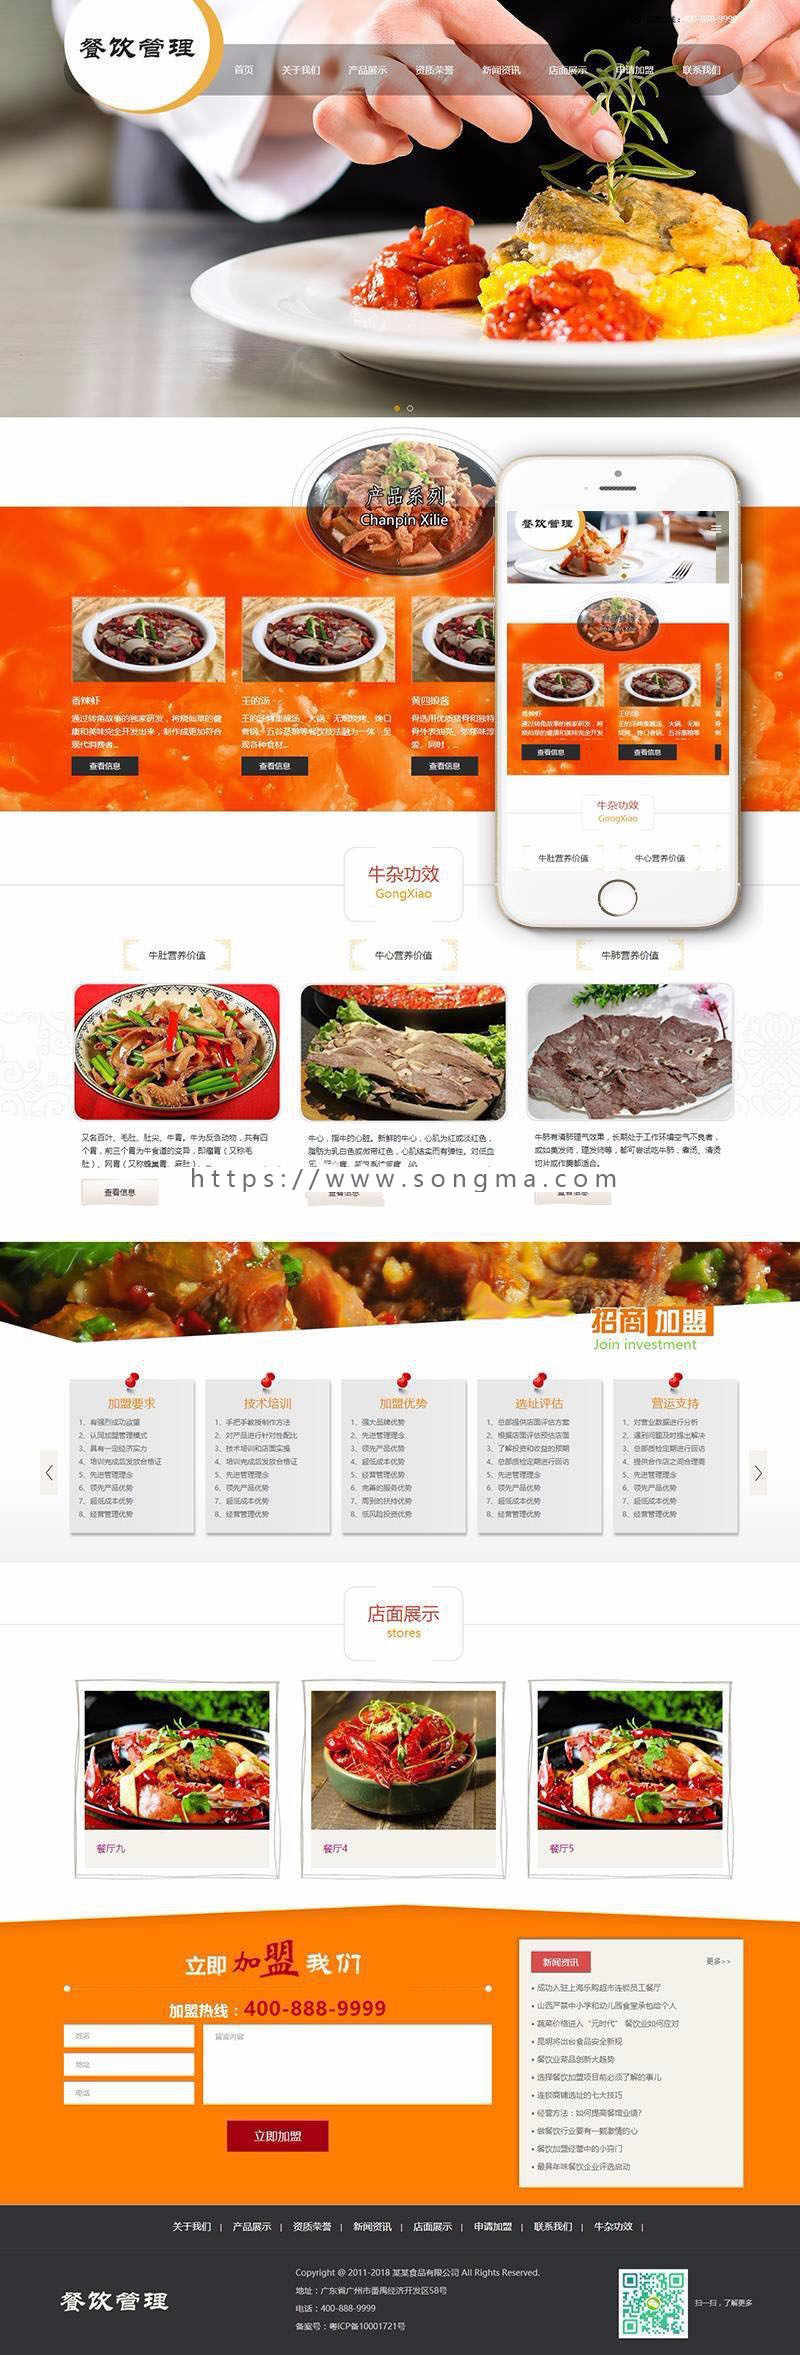 响应式餐饮牛杂小吃类网站织梦dedecms模板带手机端